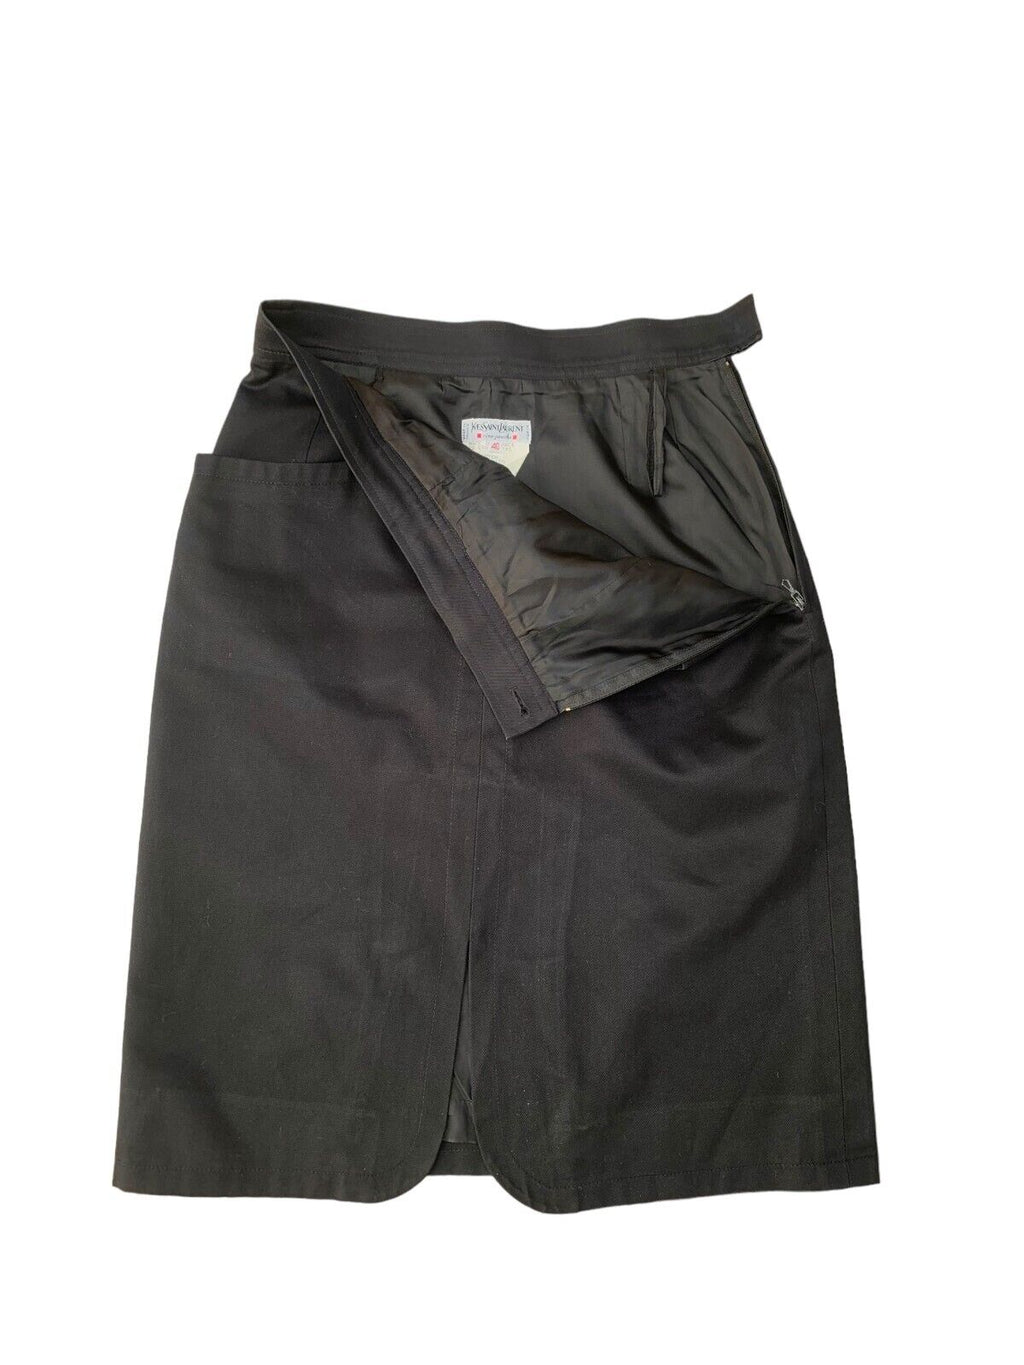 Rive Gauche Vintage Archive Black Skirt